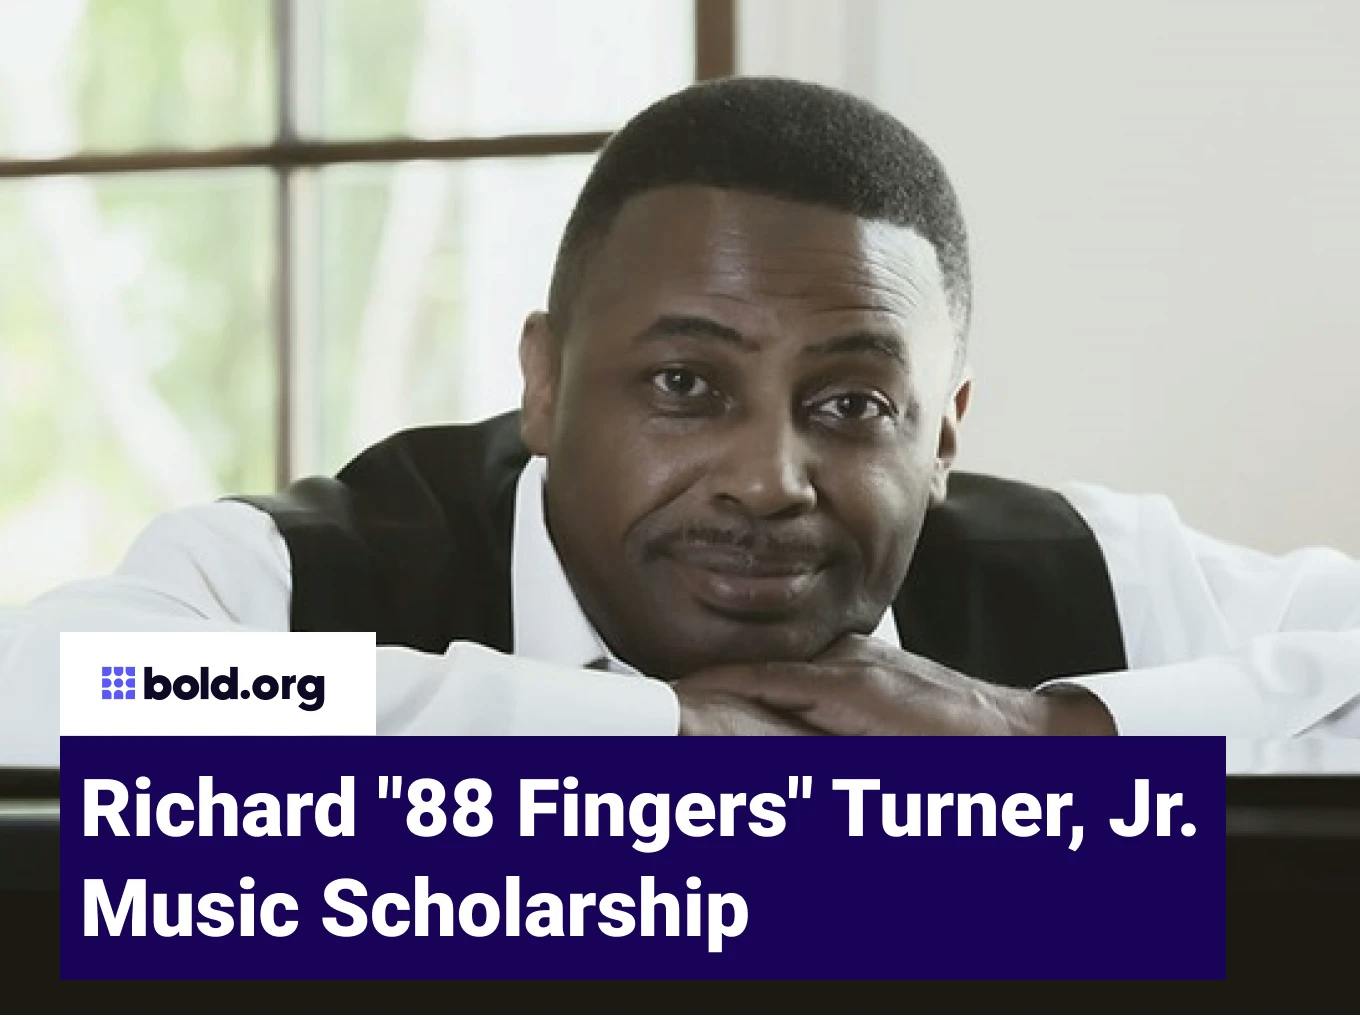 Richard "88 Fingers" Turner, Jr. Music Scholarship